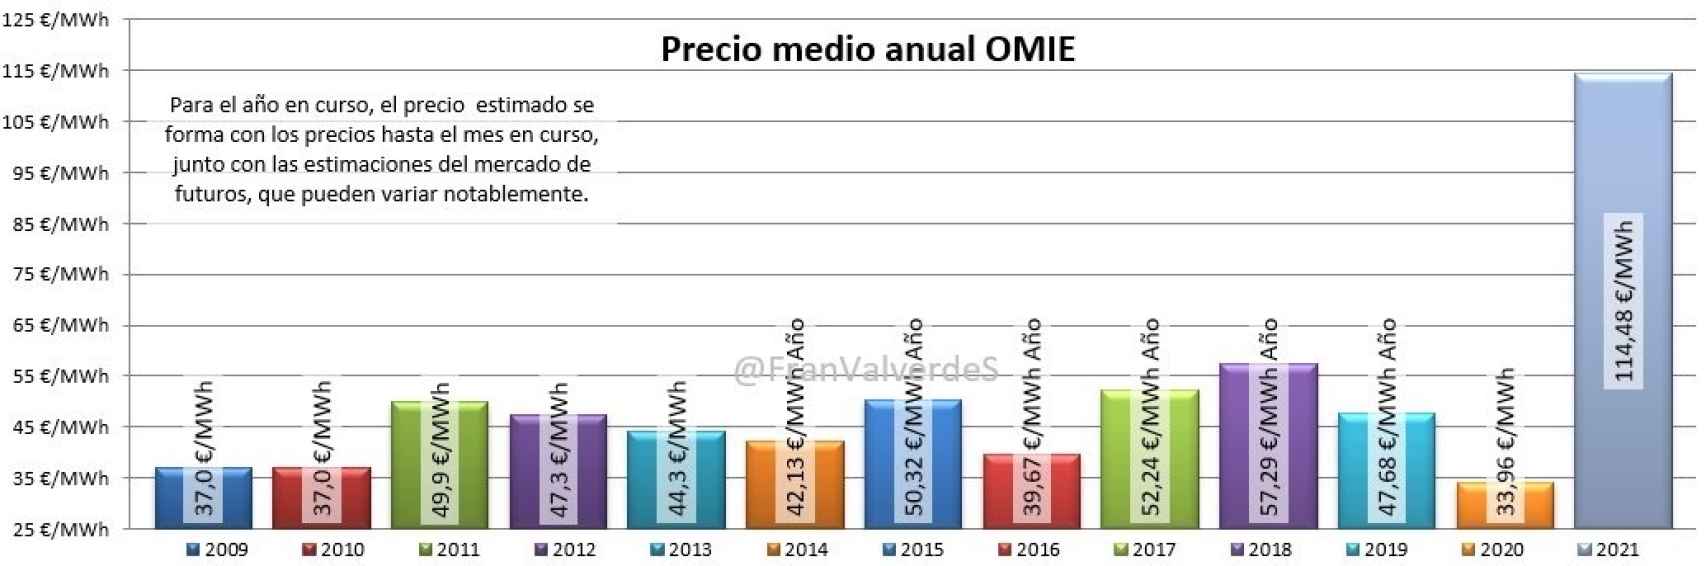 Comparativa de precios eléctricos medios anuales en España desde 2009